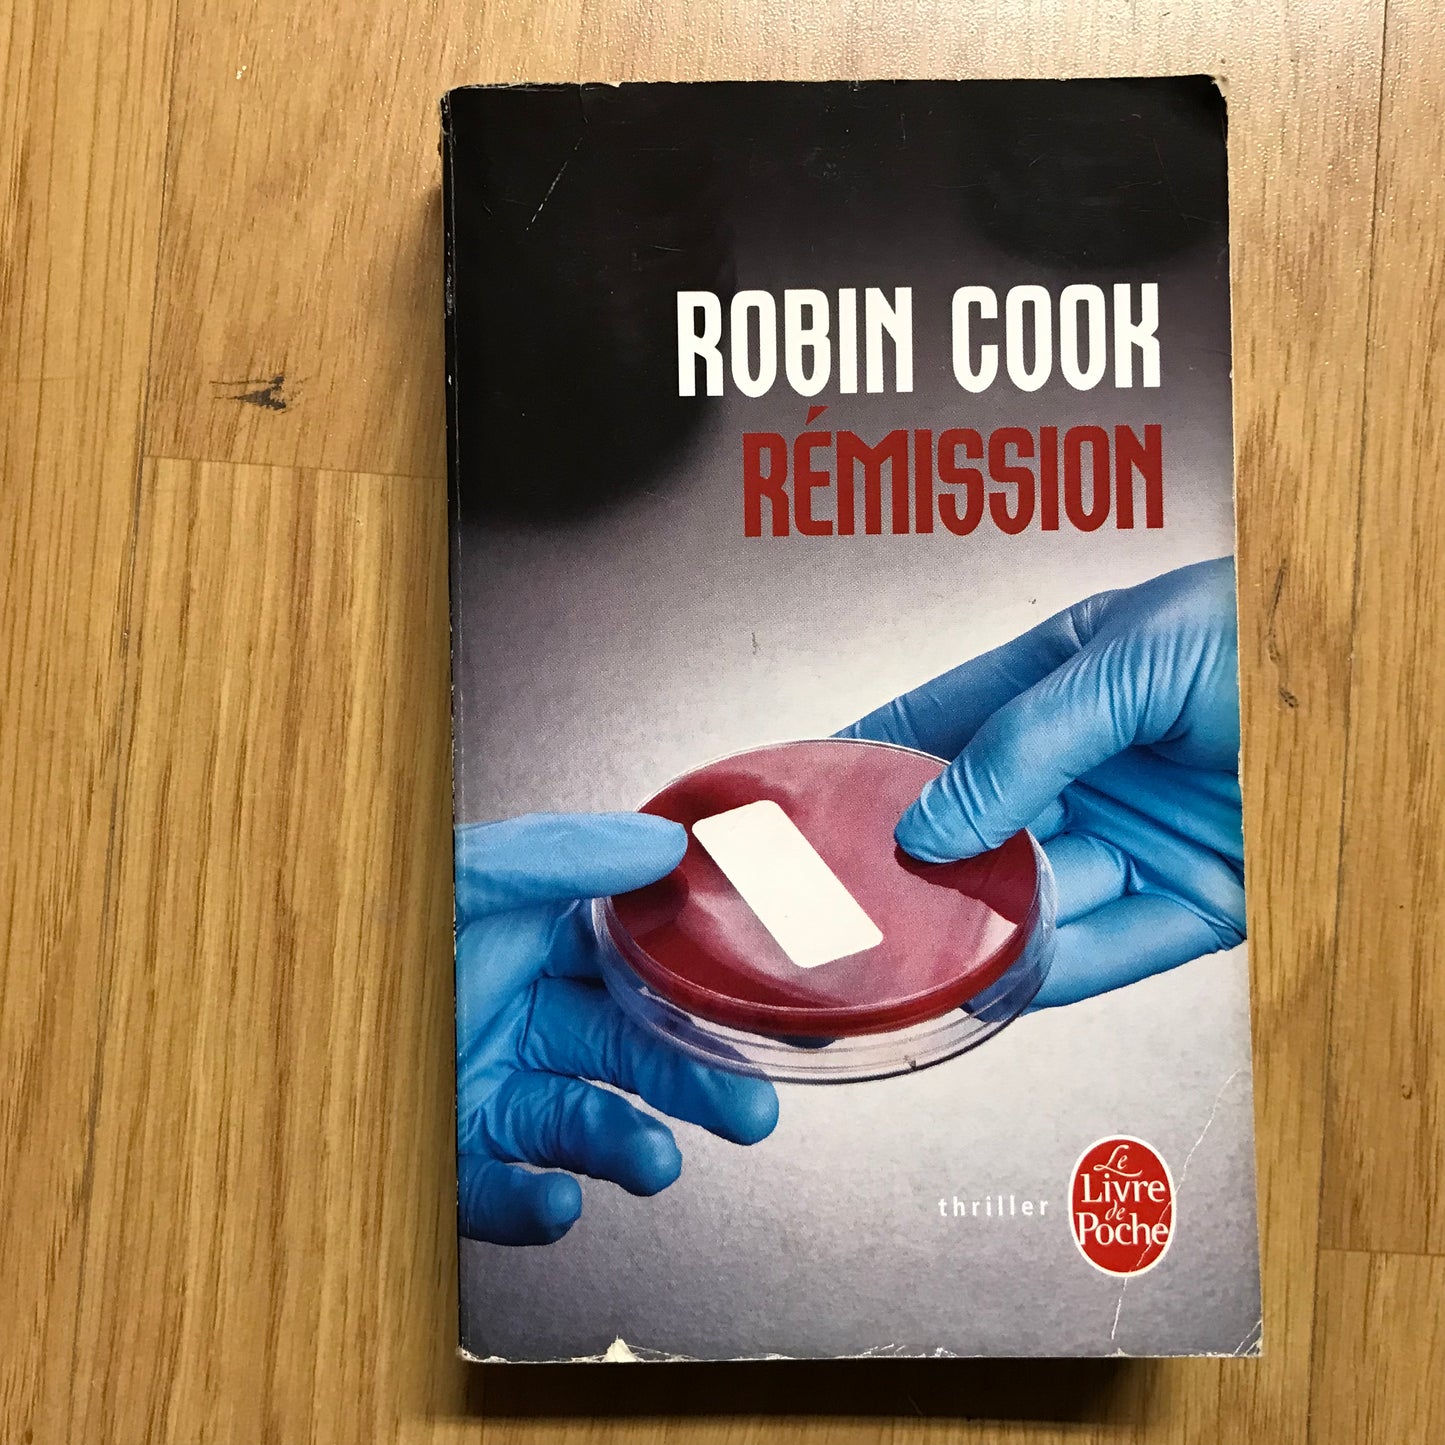 Cook, Robin - Rémission